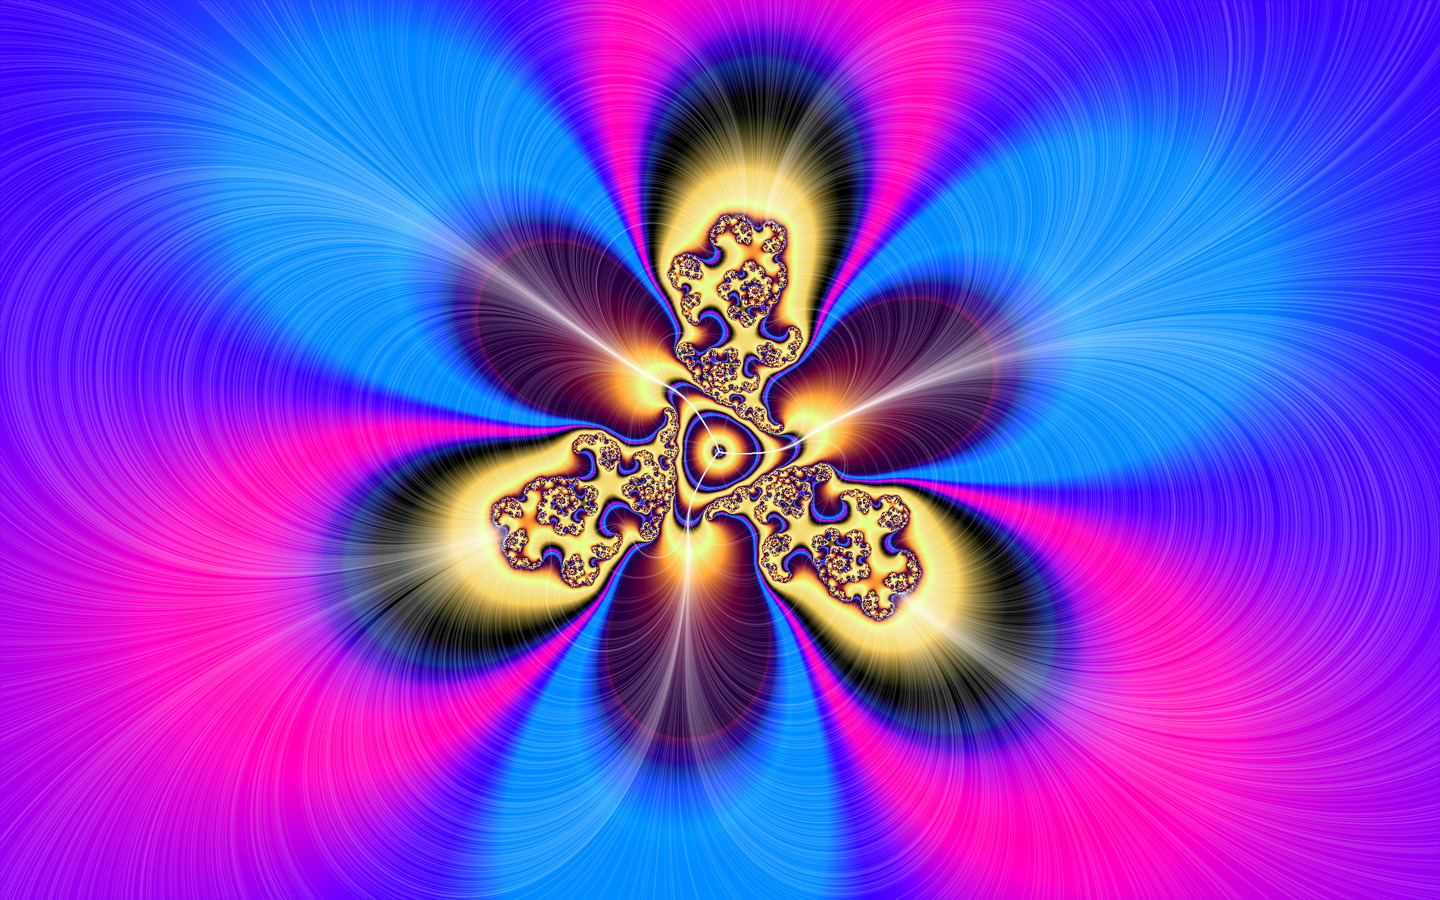 graphic design wallpaper,blue,fractal art,purple,violet,symmetry